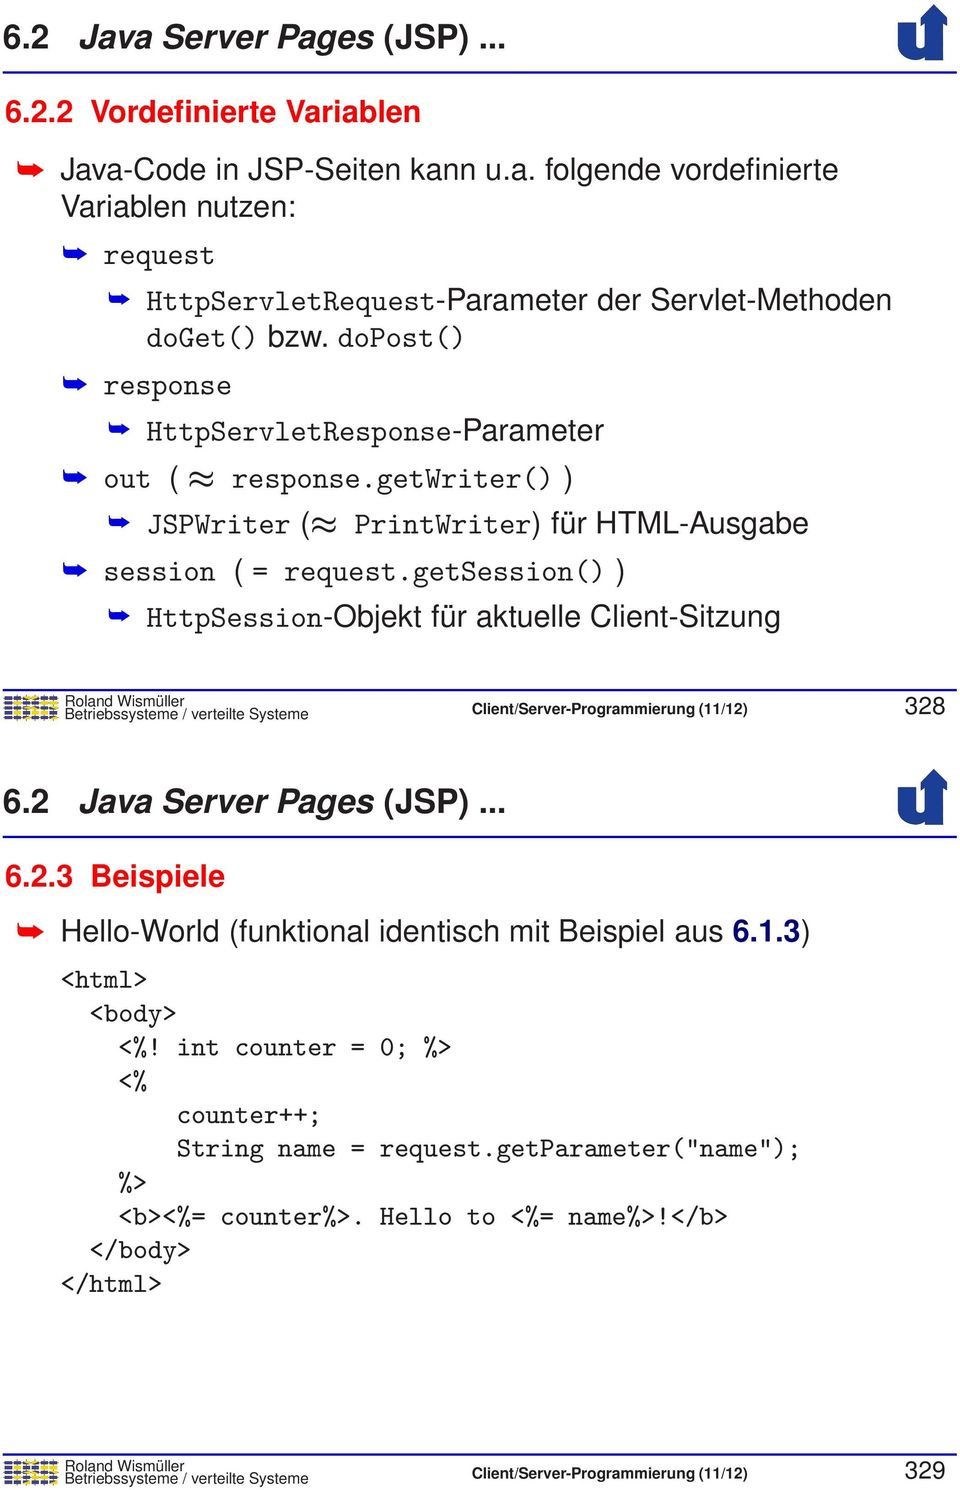 getsession() ) HttpSession-Objekt für aktuelle Client-Sitzung Betriebssysteme / verteilte Systeme Client/Server-Programmierung (11/12) 328 6.2 Java Server Pages (JSP)... 6.2.3 Beispiele Hello-World (funktional identisch mit Beispiel aus 6.